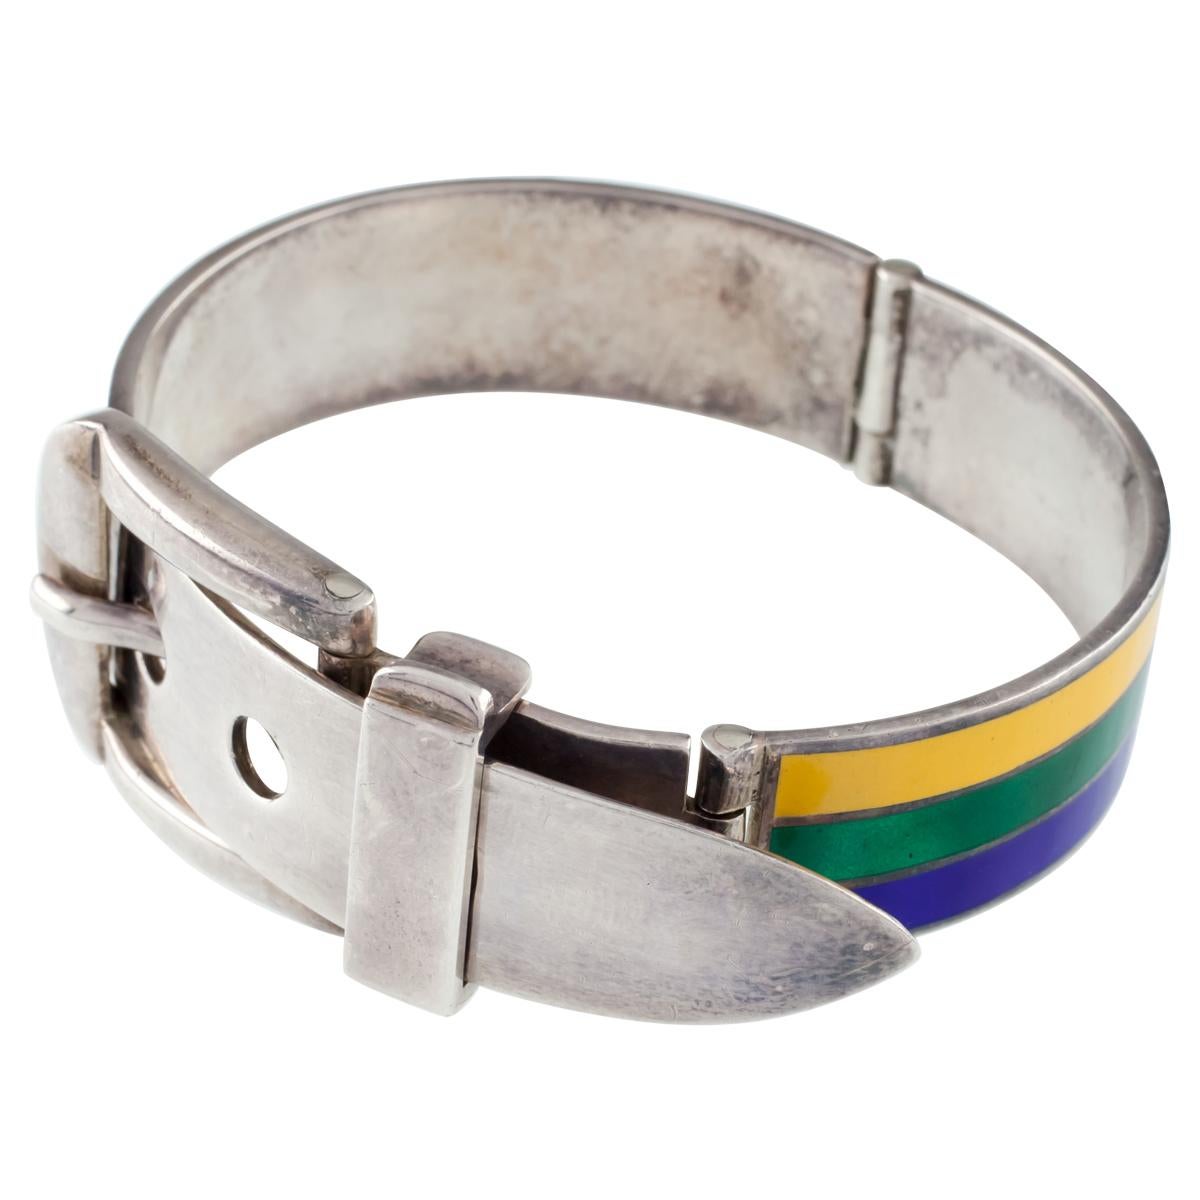 Silver Belt Bracelet - 2 For Sale on 1stDibs